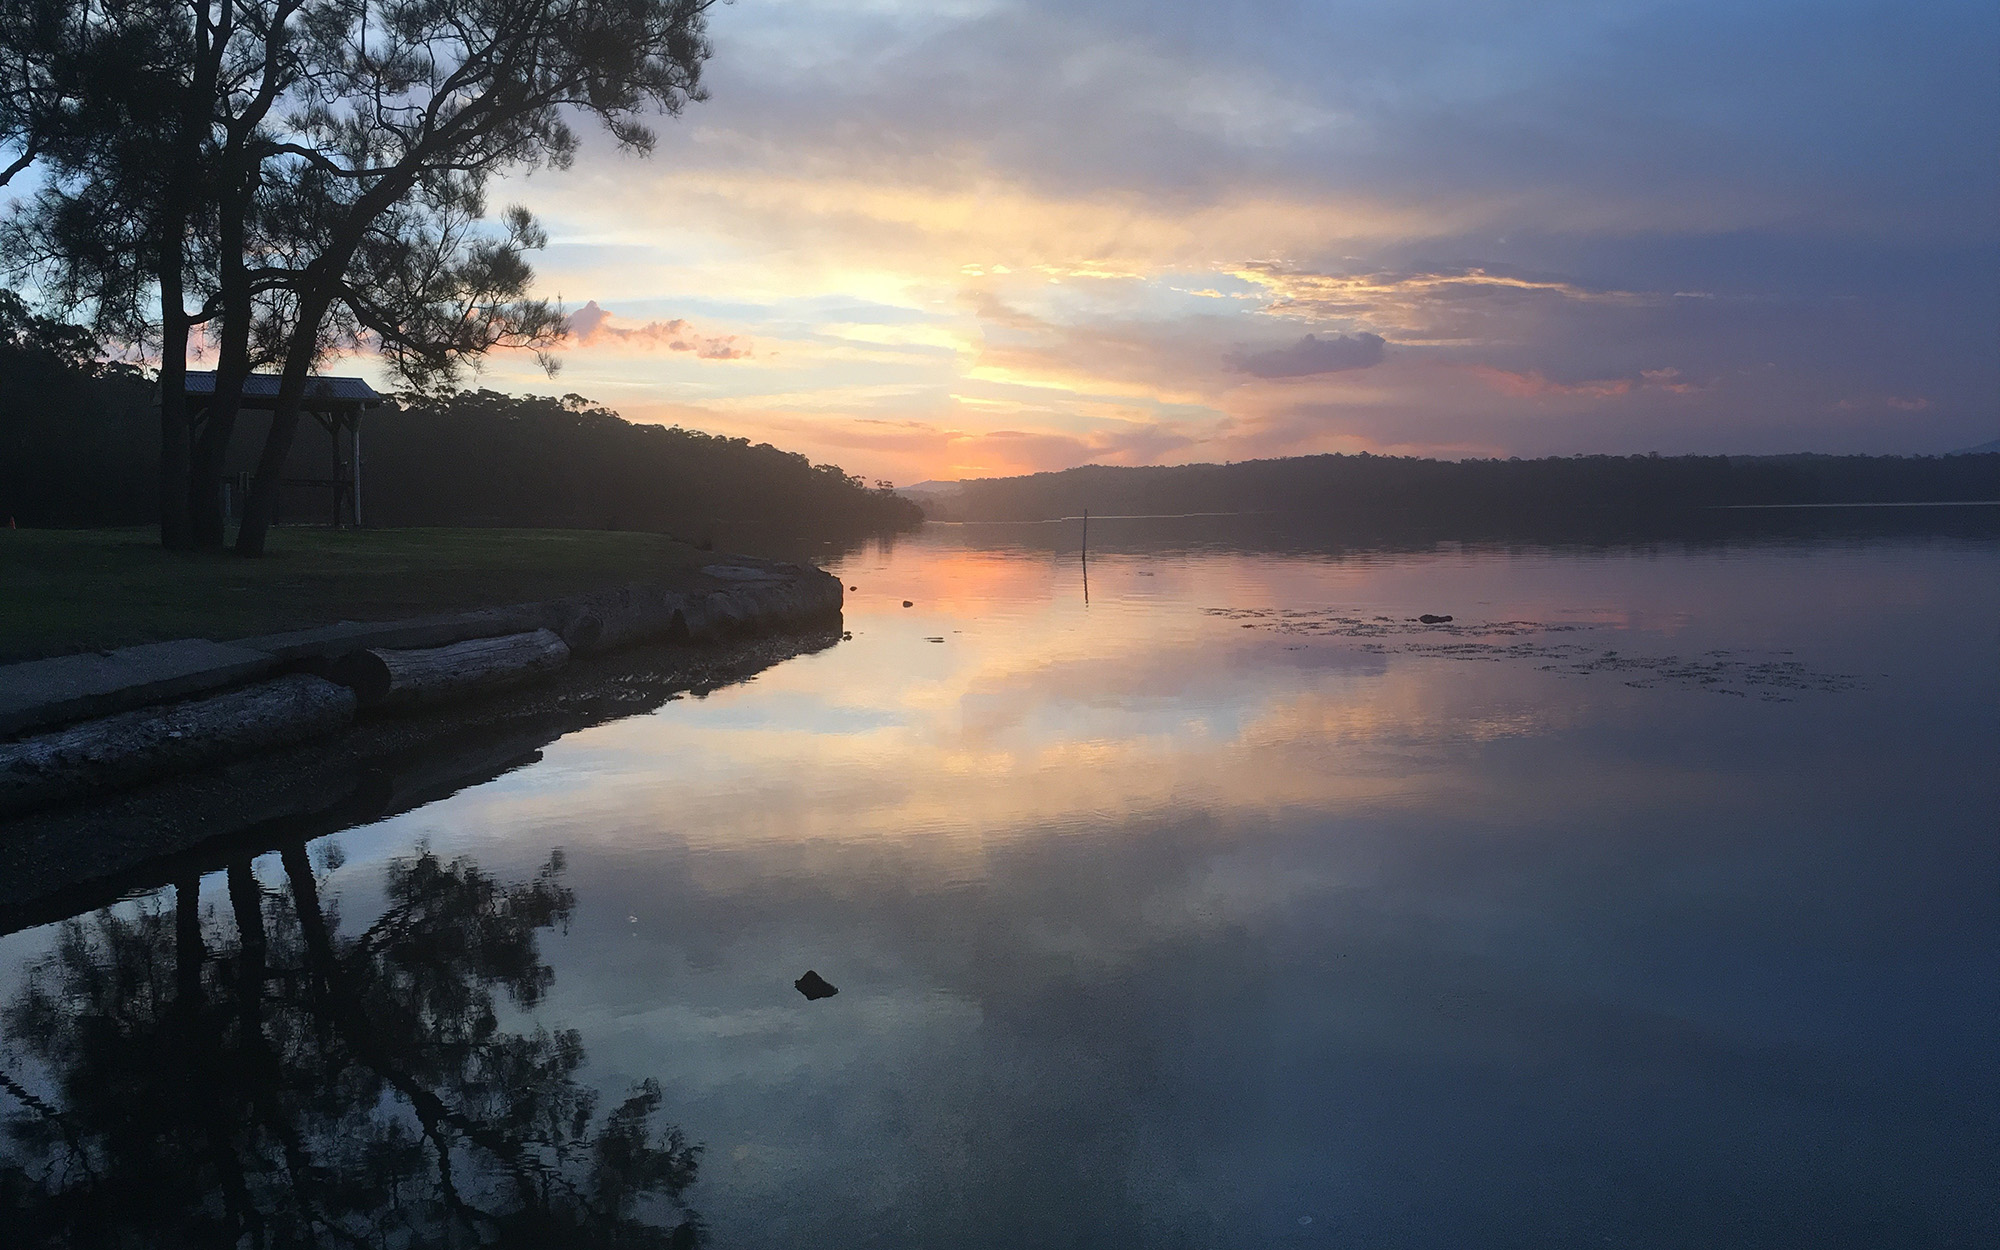 Melis Hurriyet - Sunset at Wallaga Lake